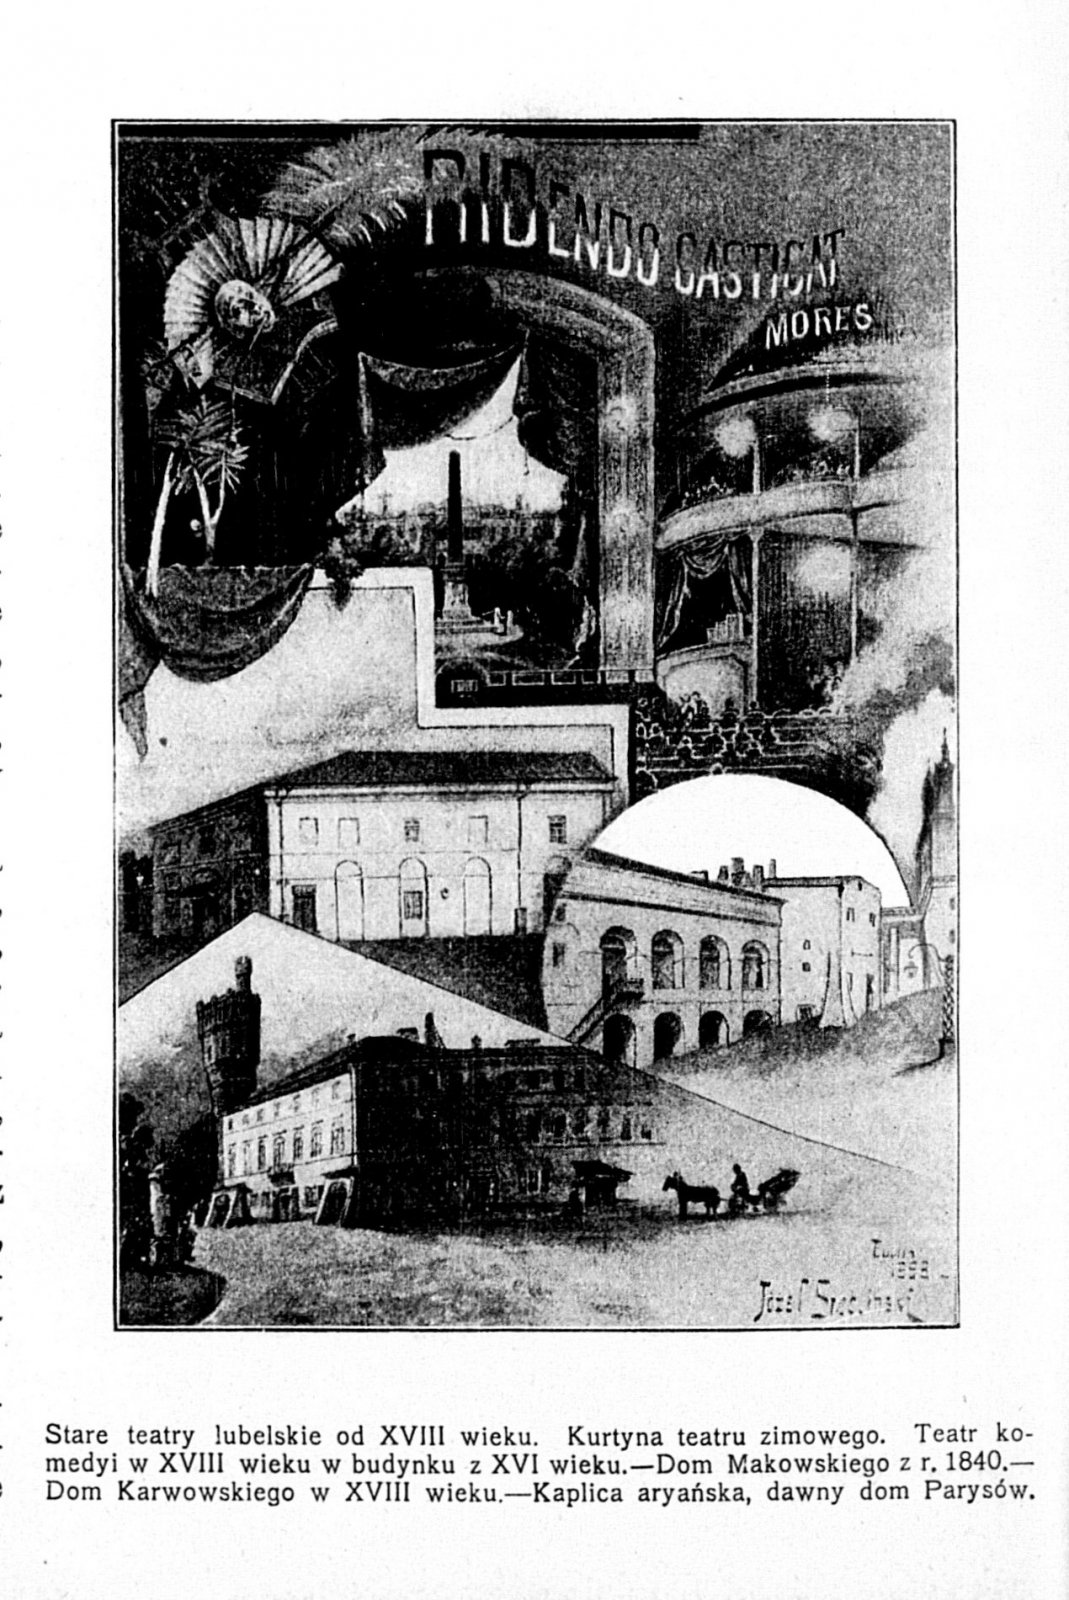 Rycina z gazety przedstawijąca stare teatry lubelskie, na samej górze widoczne wnętrze Teatru Makowskich, a poniżej jego bryła, “Biesiada Literacka” 1901.